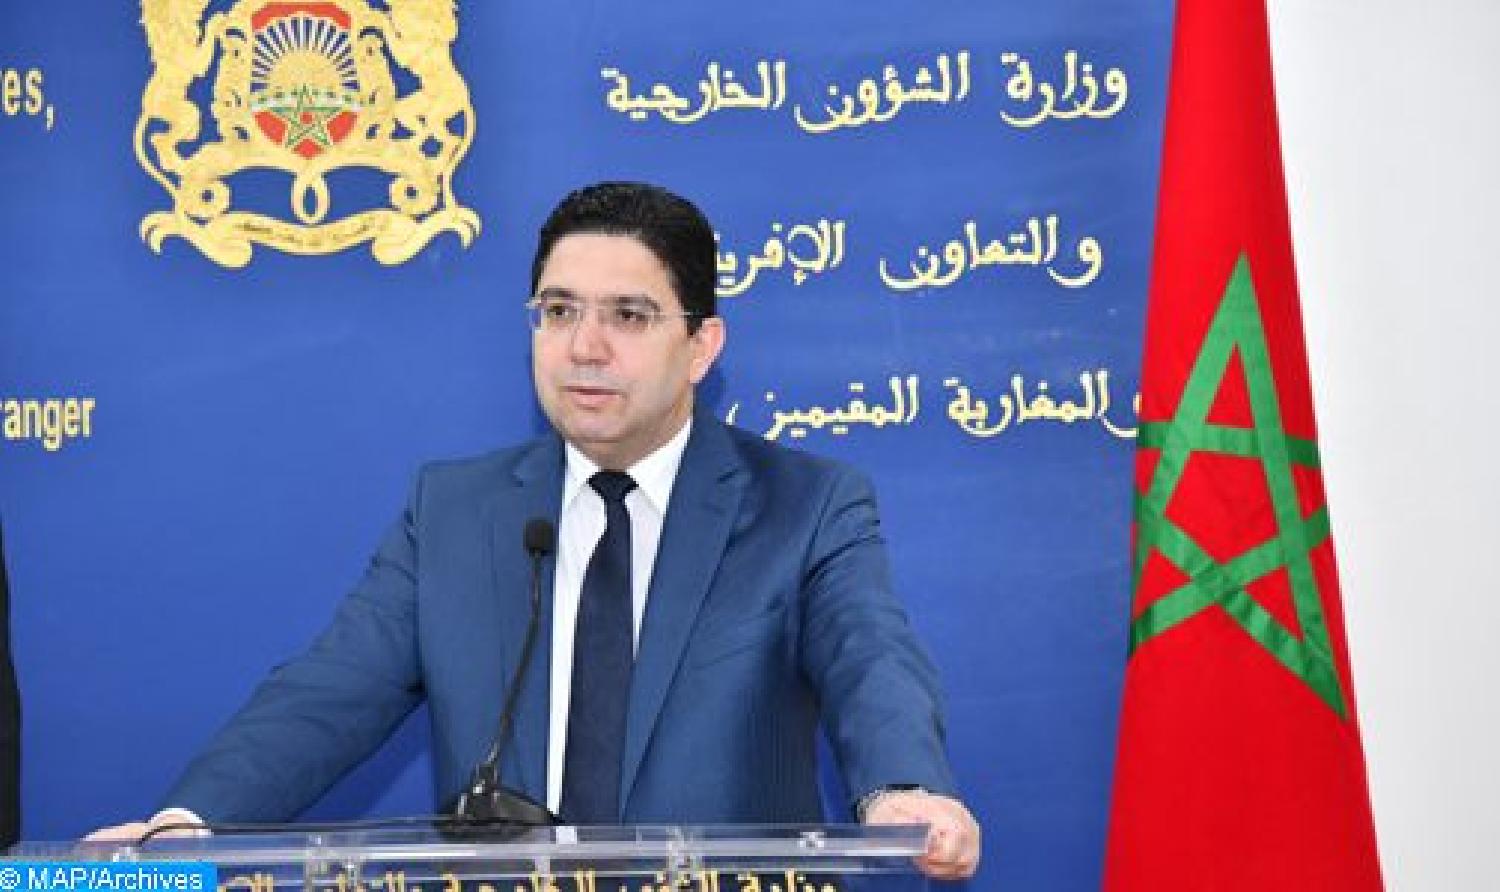 المغرب يدعو مختلف الأطراف في مالي إلى حوار مسؤول لنبذ الصراعات